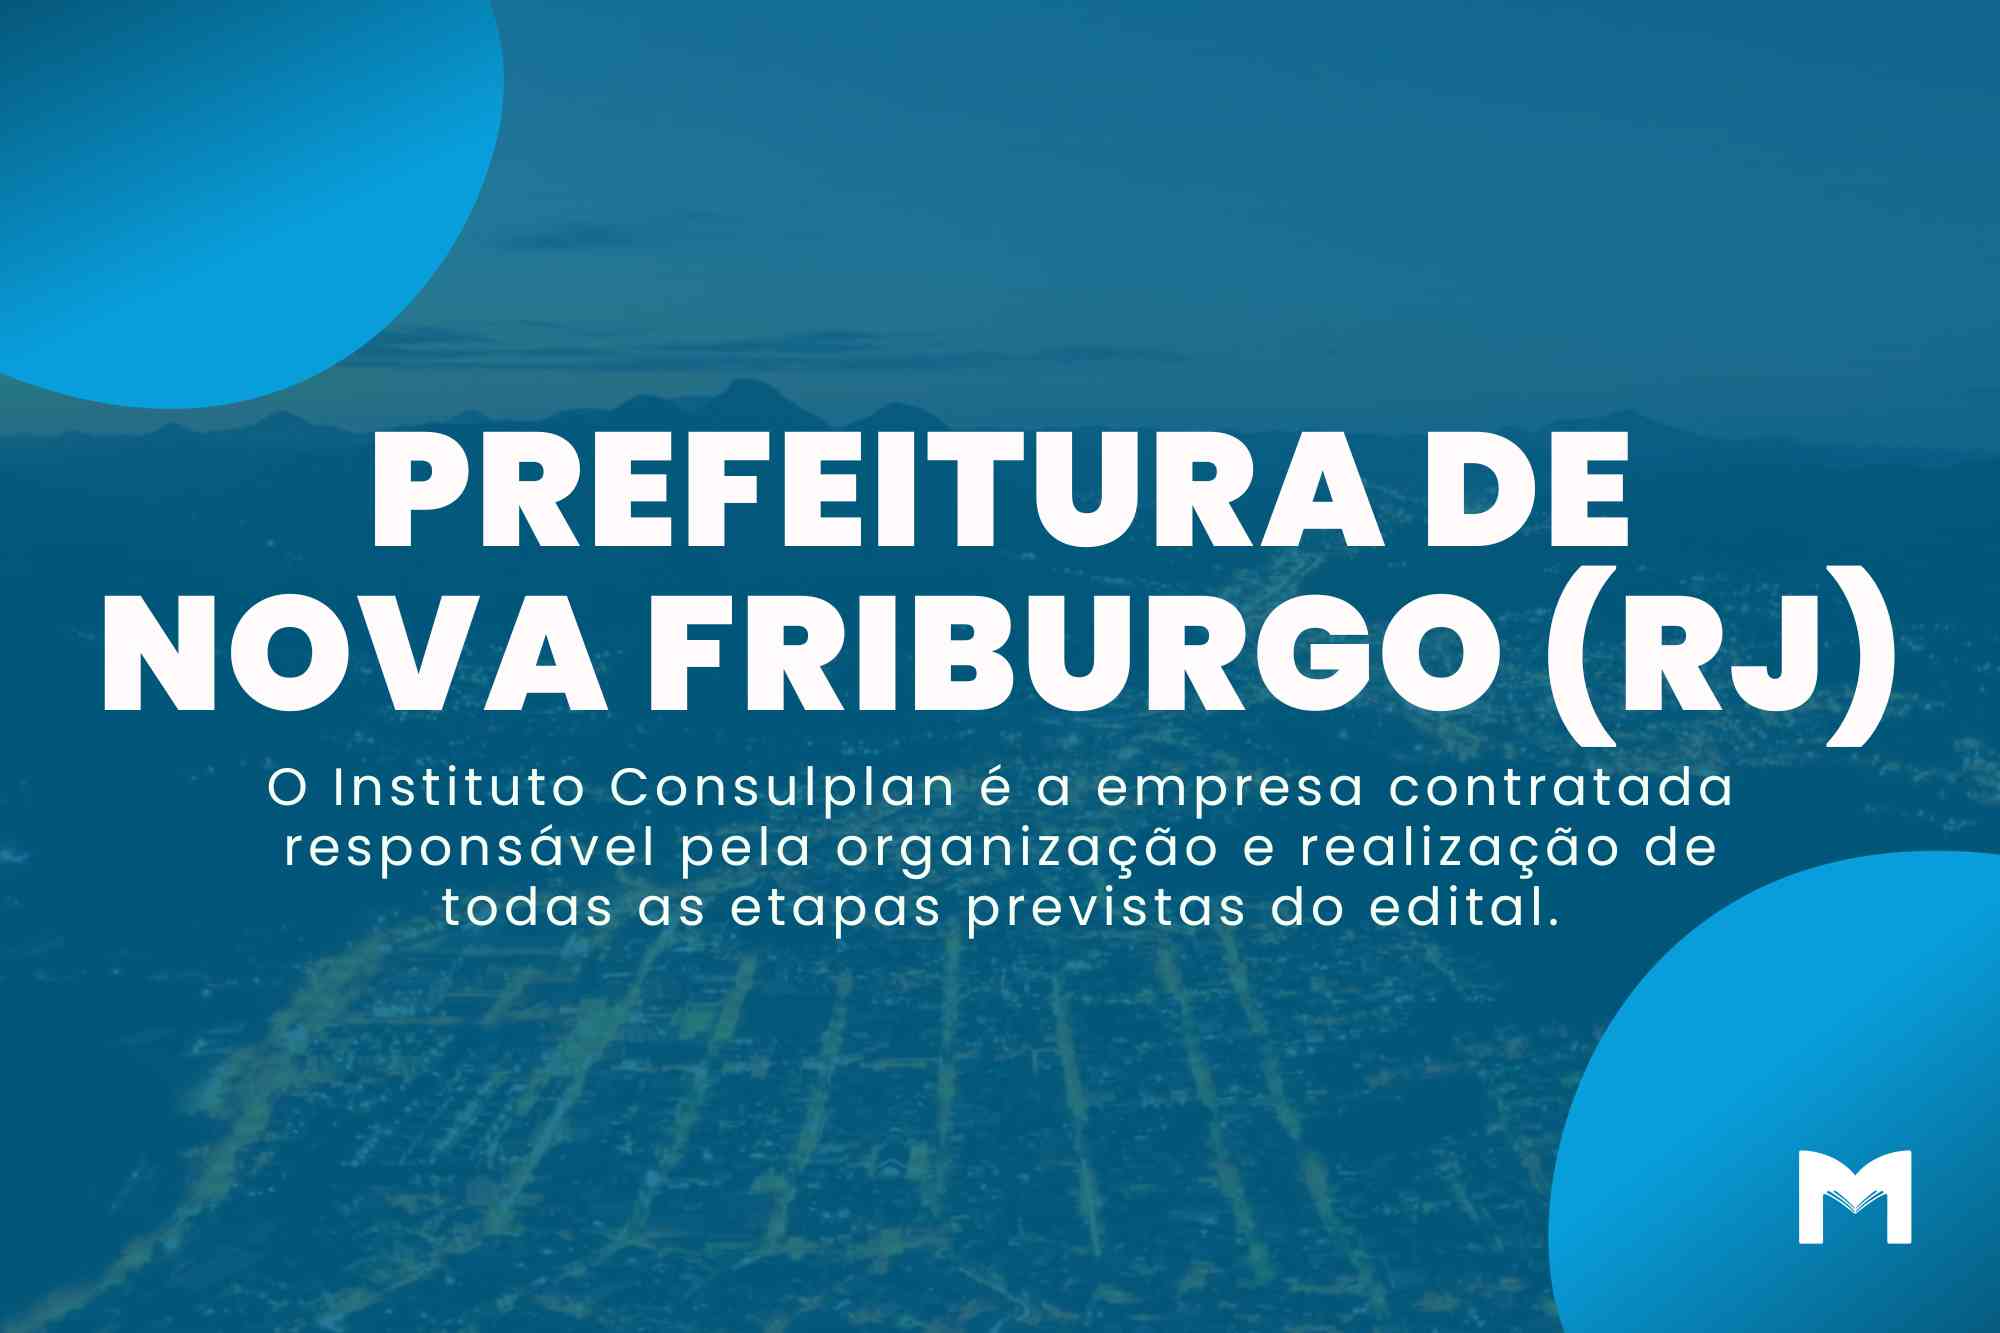 Concurso Nova Friburgo RJ: Quase 50 mil inscrições registradas!